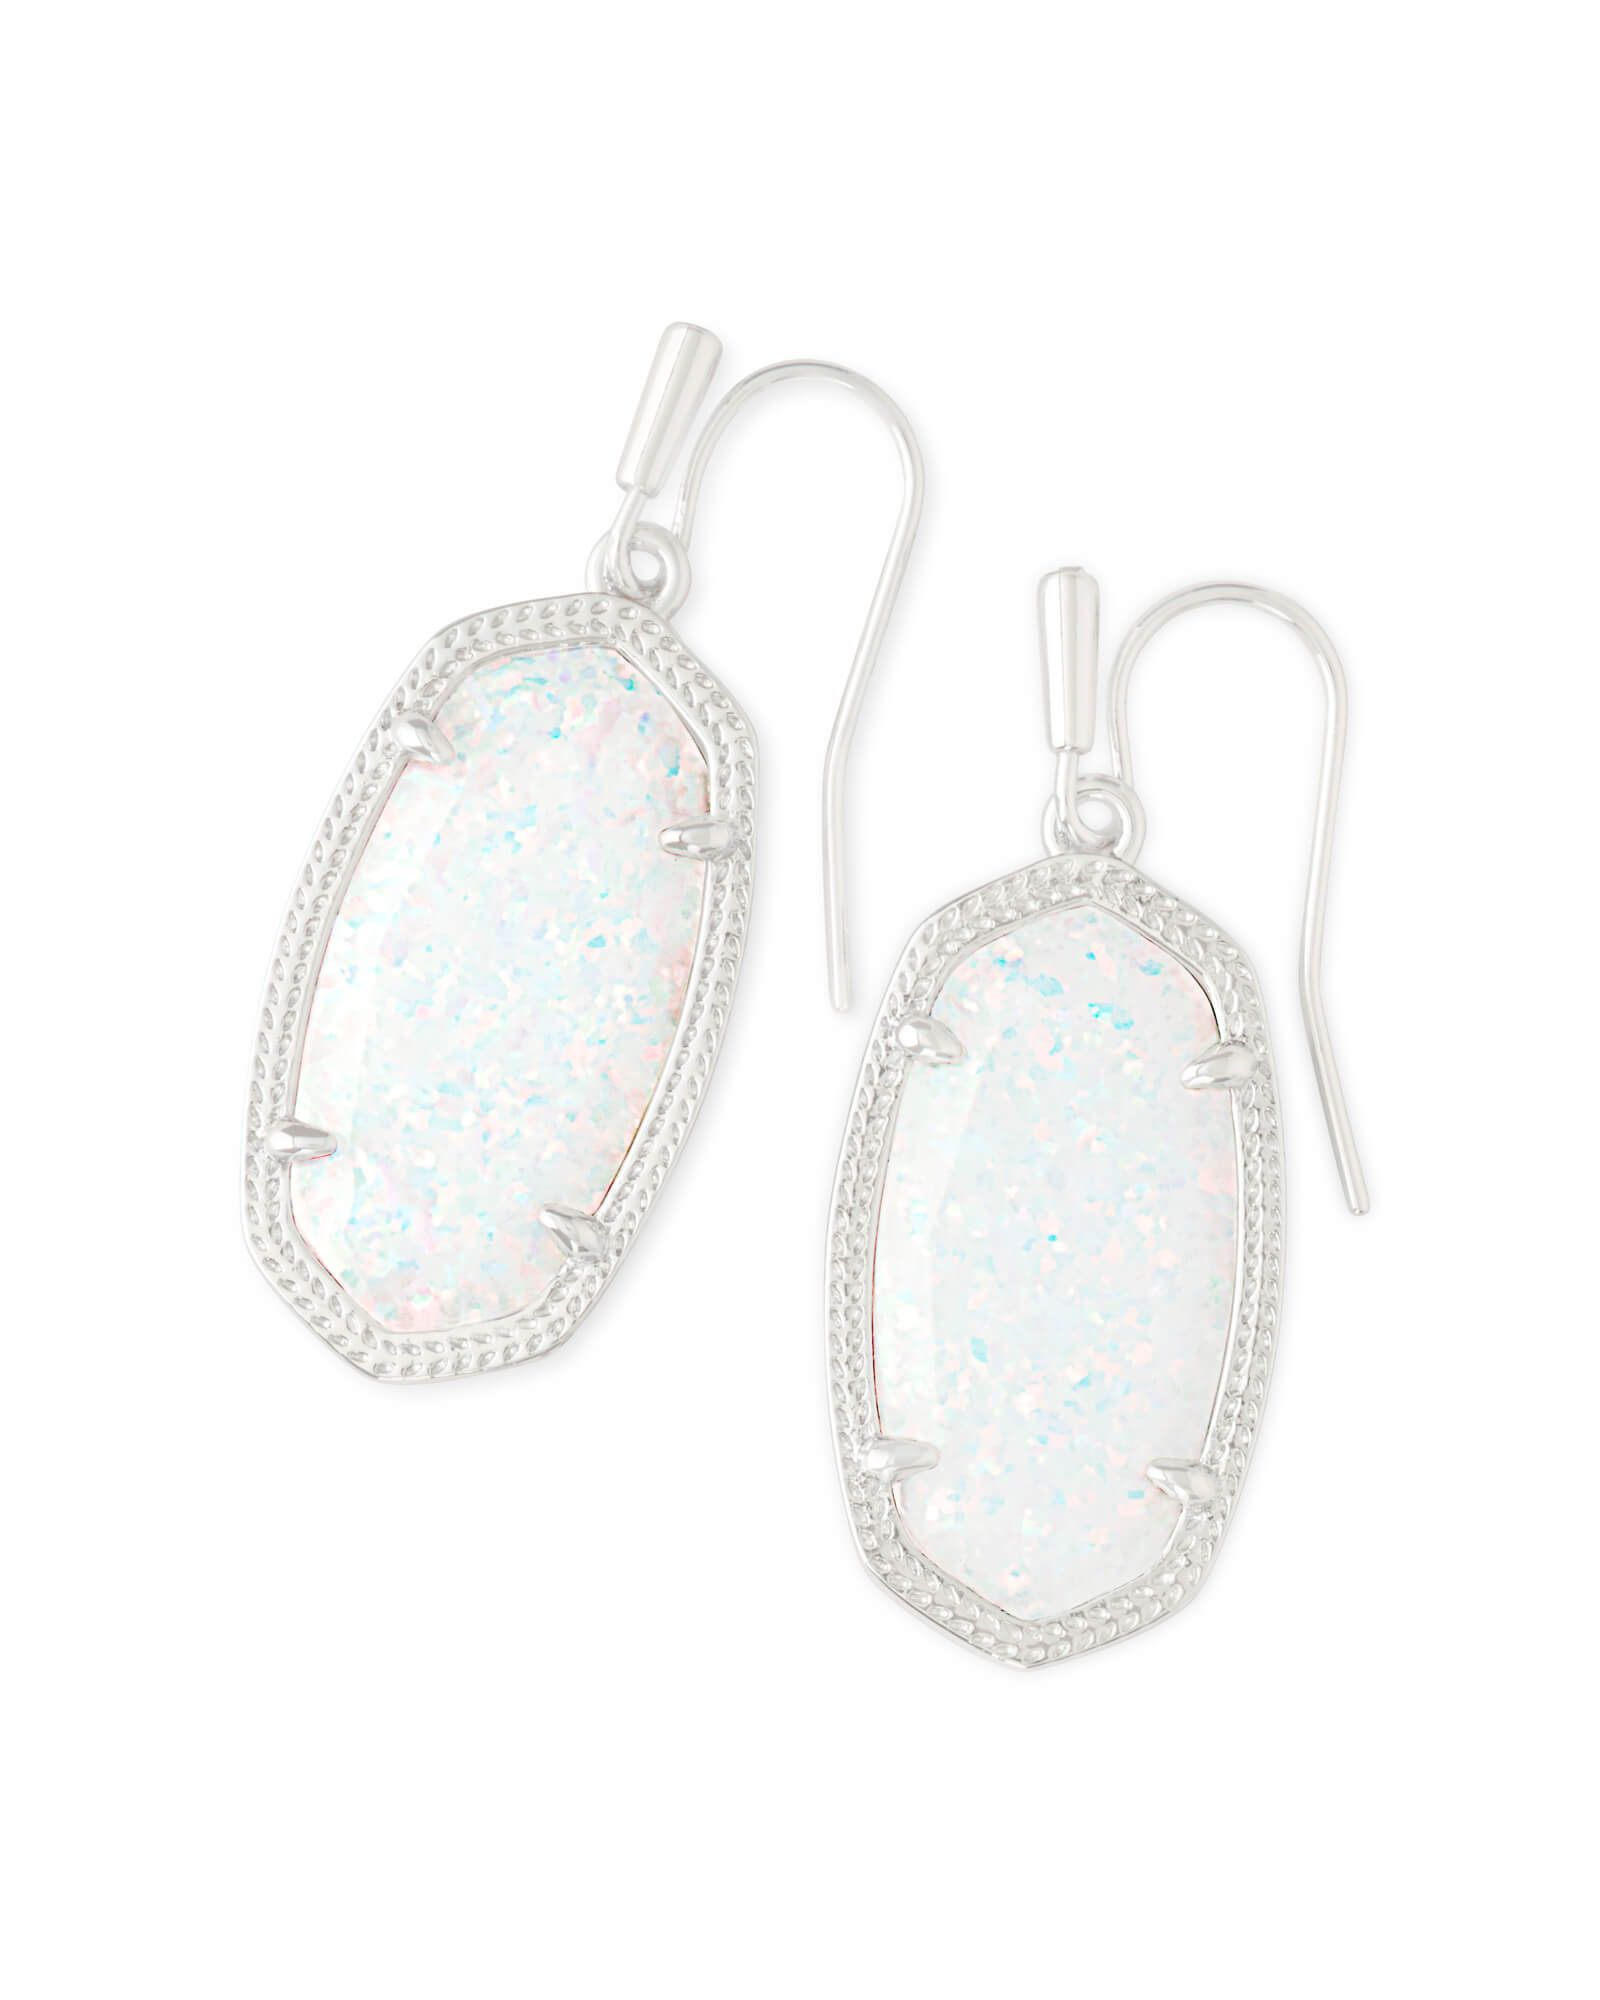 Dani Silver Drop Earrings in Ocean Kyocera Opal | Kendra Scott | Kendra Scott